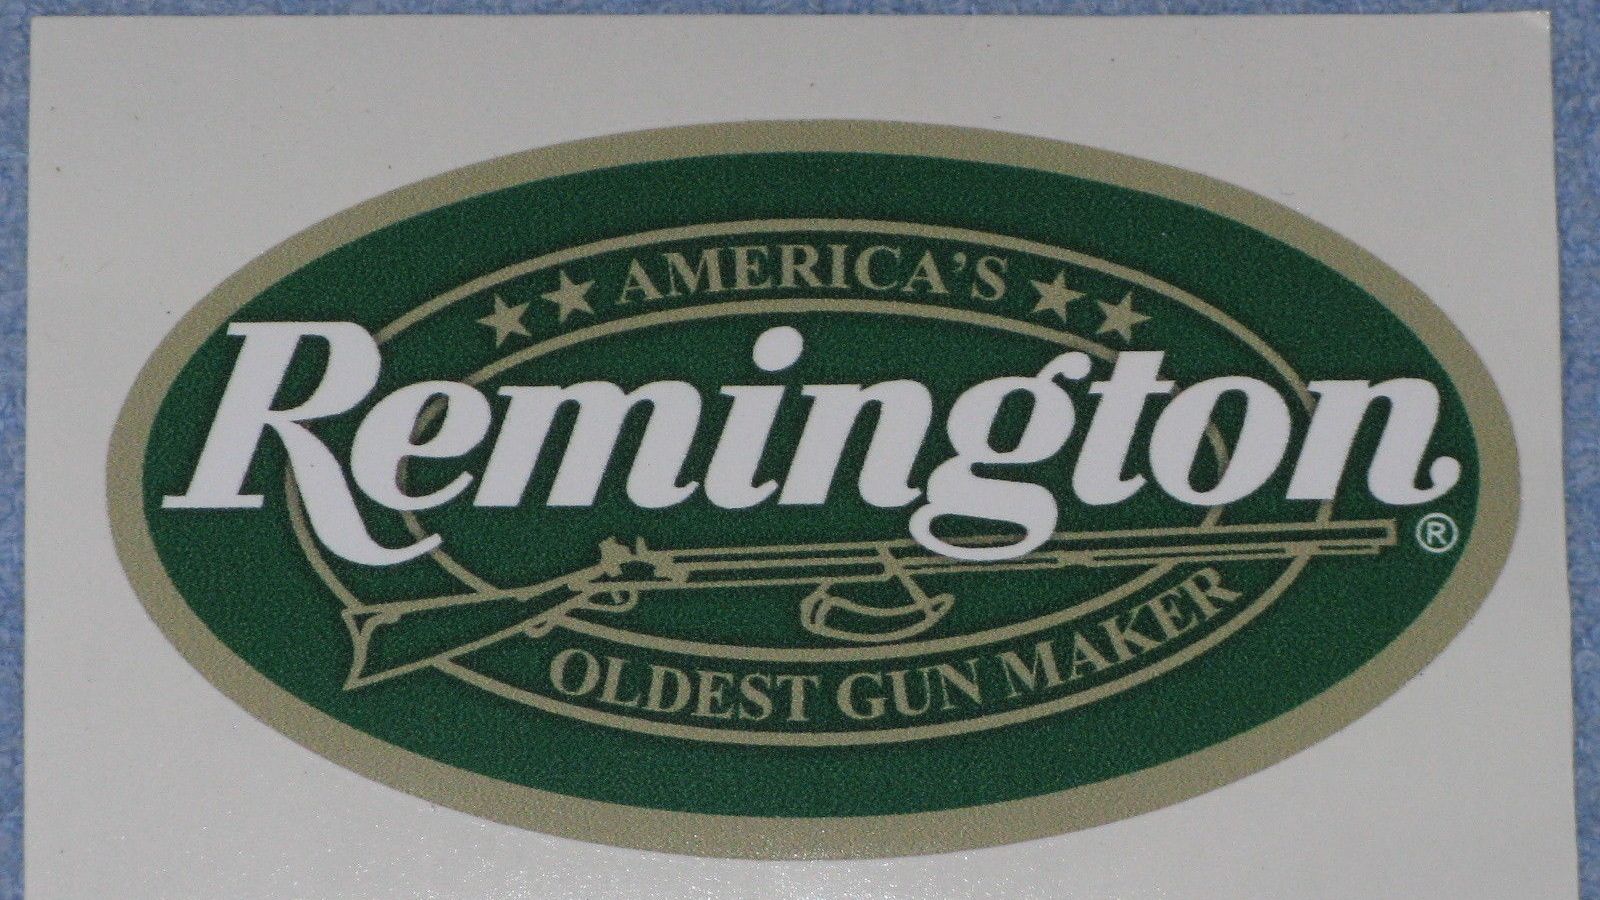 remington arms wallpaper